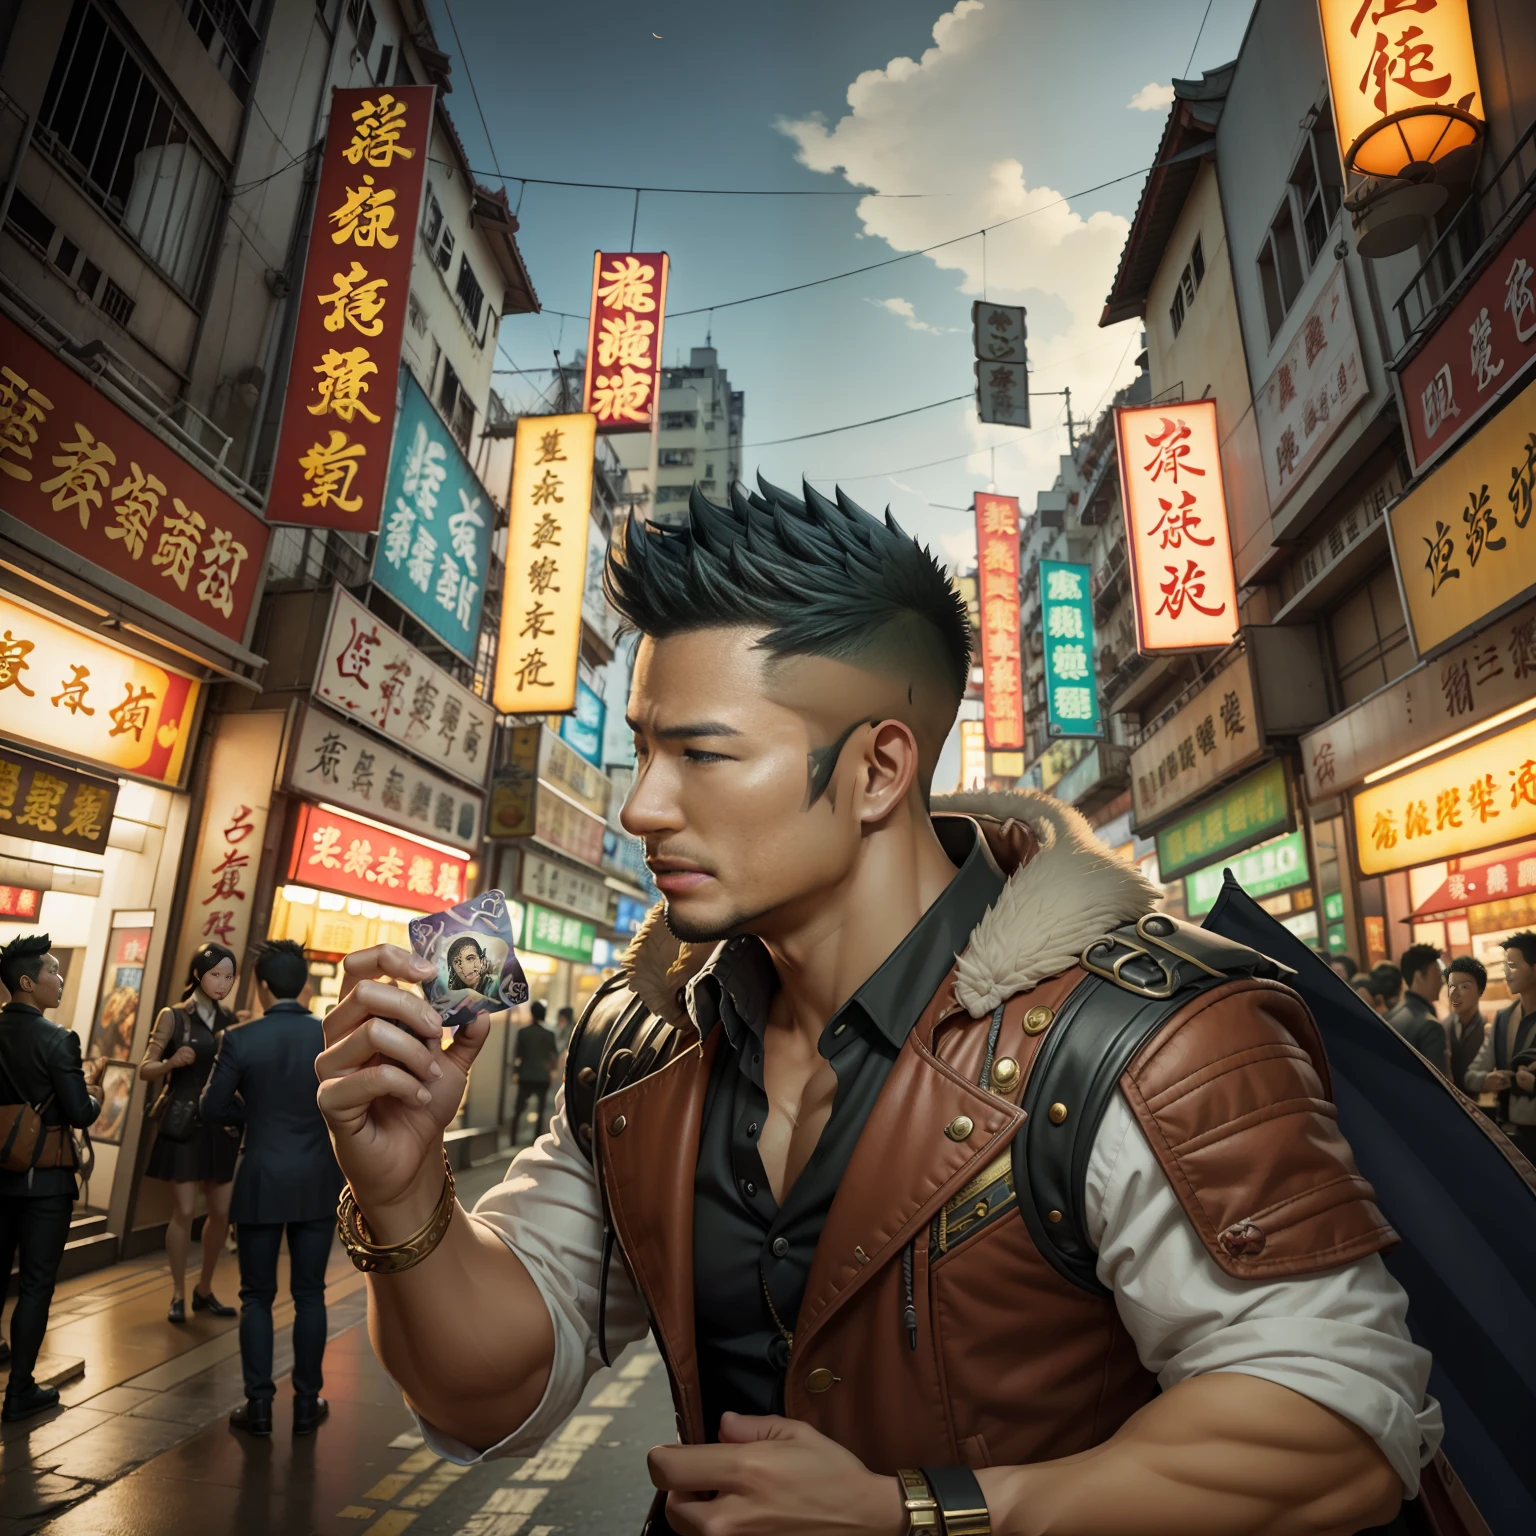 (巨作) 品质极佳, 超详细的插图, 超高分辨率, 演绎35岁香港侦探孔林的帅气形象, 谁成熟又成熟。肌肉平均，毛发较短且胡茬修剪不充分，在超现实的城市中装扮。万智牌卡牌在他周围飘浮，红龙悠闲地飞过。背景细节精致，场景超现实，创造迷人的图形风格。